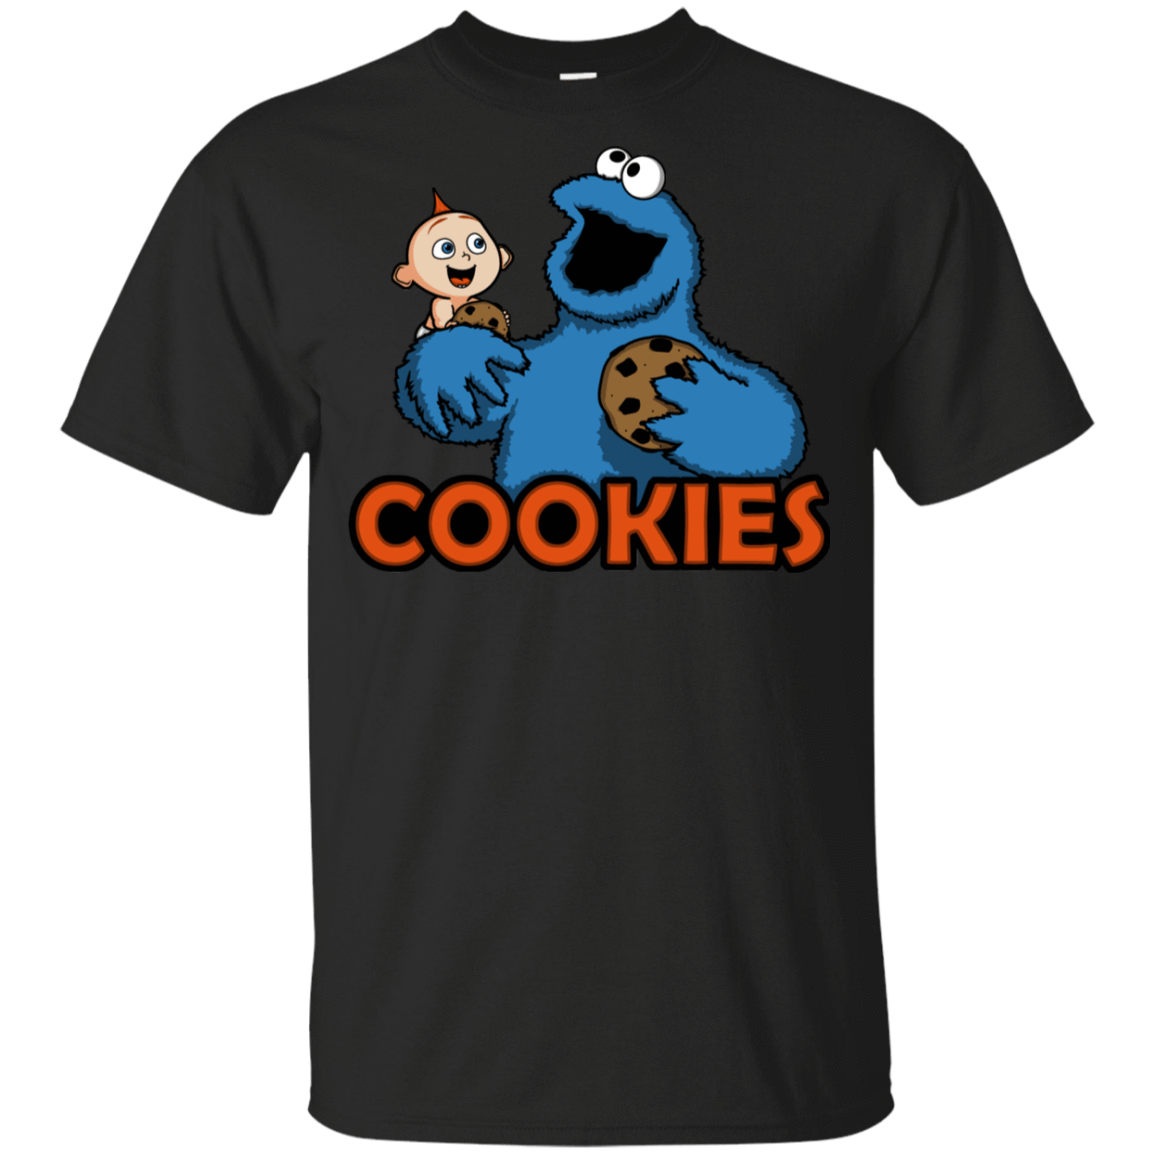 T-Shirts Black / YXS Cookies Youth T-Shirt